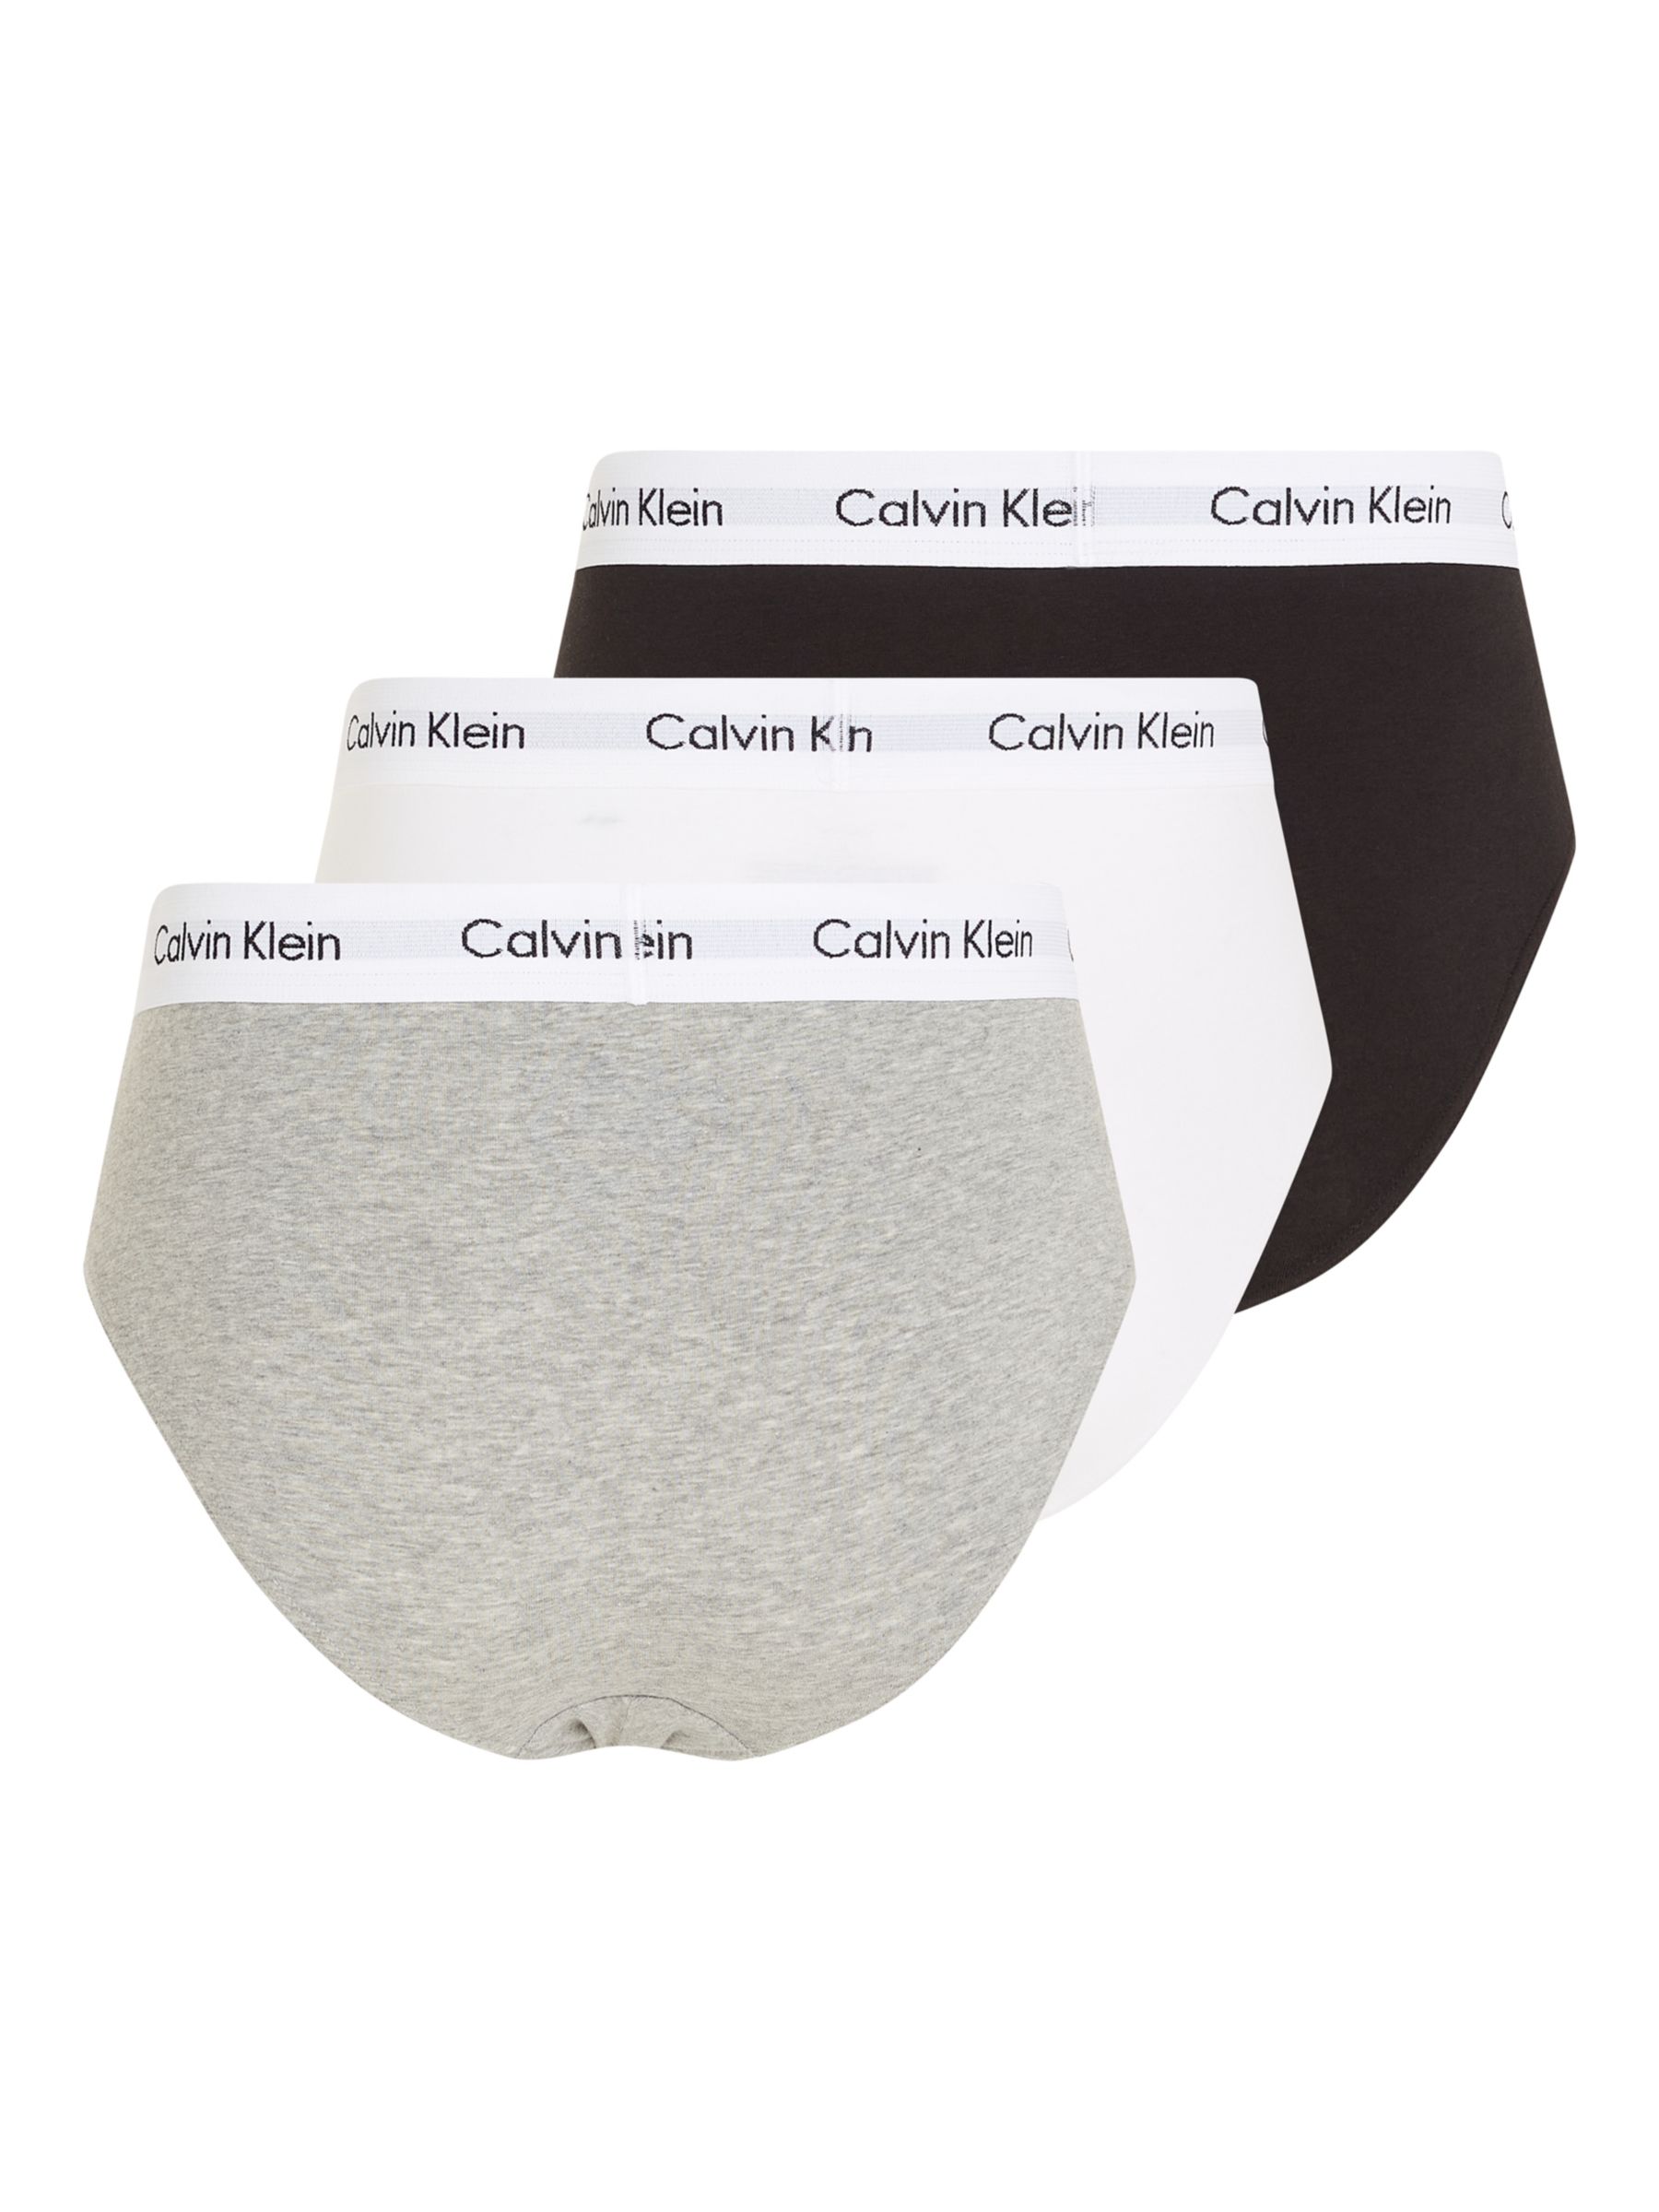 3 Pack Thongs - Ideal Cotton Calvin Klein®